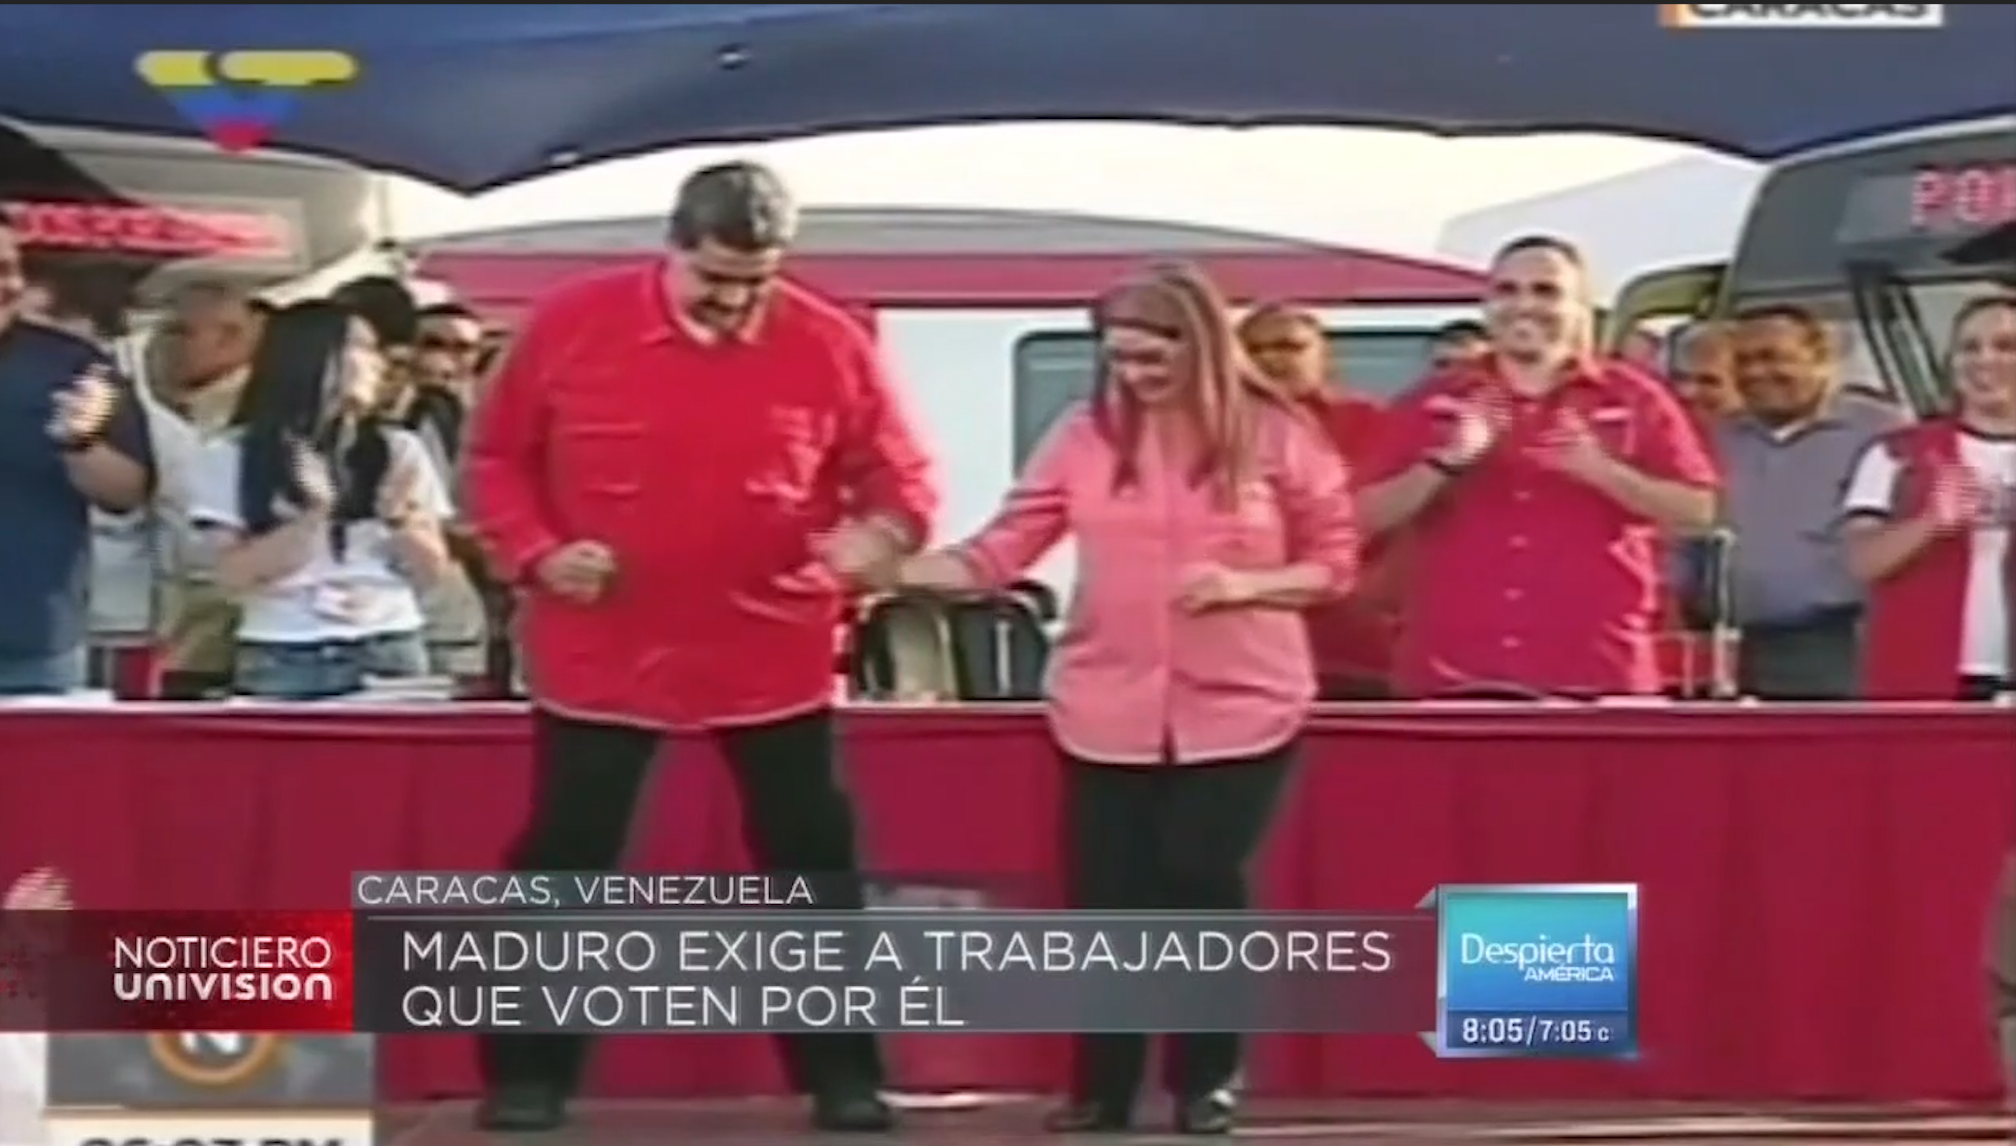 Presidente Nicolás Maduro Exige A Trabajadores Que Voten Por El